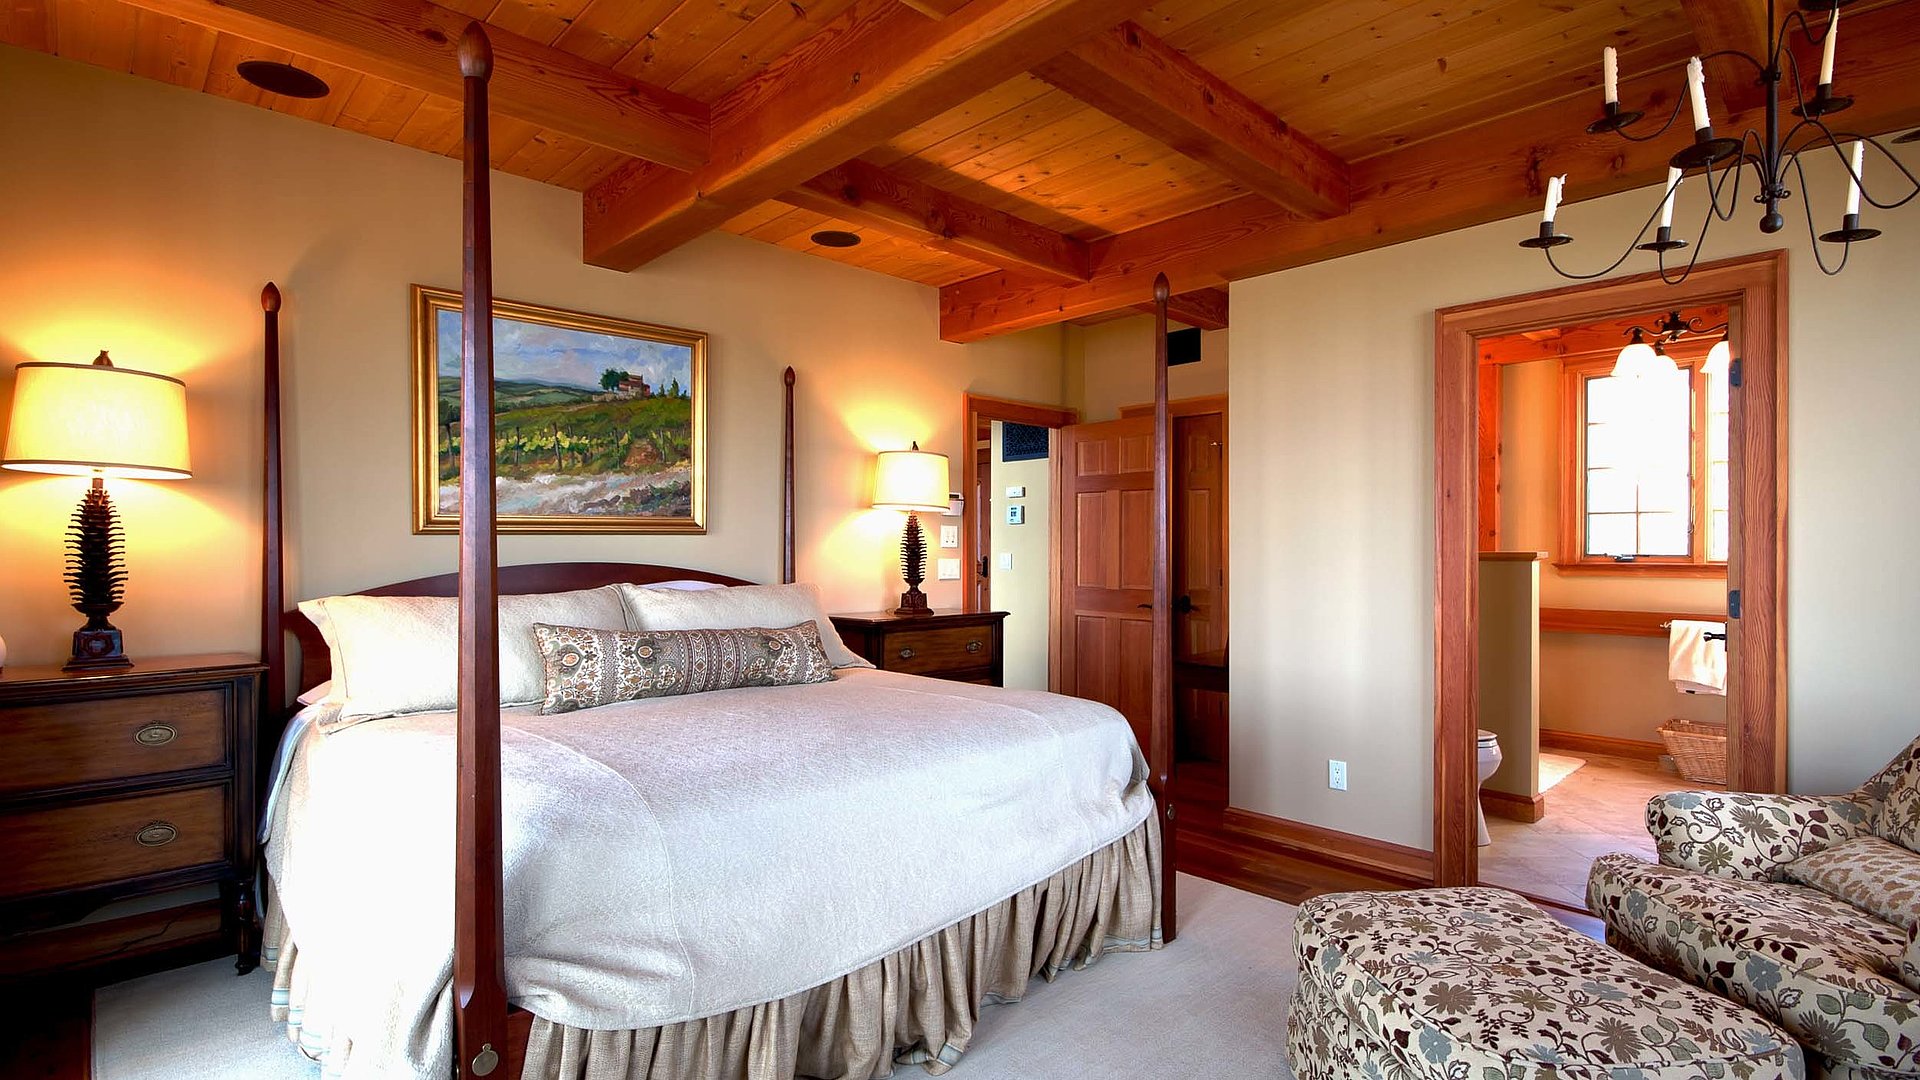 Exklusive Ferienwohnungen in Unterfranken - sehr ordentliches Hotelzimmer mit großem Bett, warmer Nachtlampe und Wandgemälde